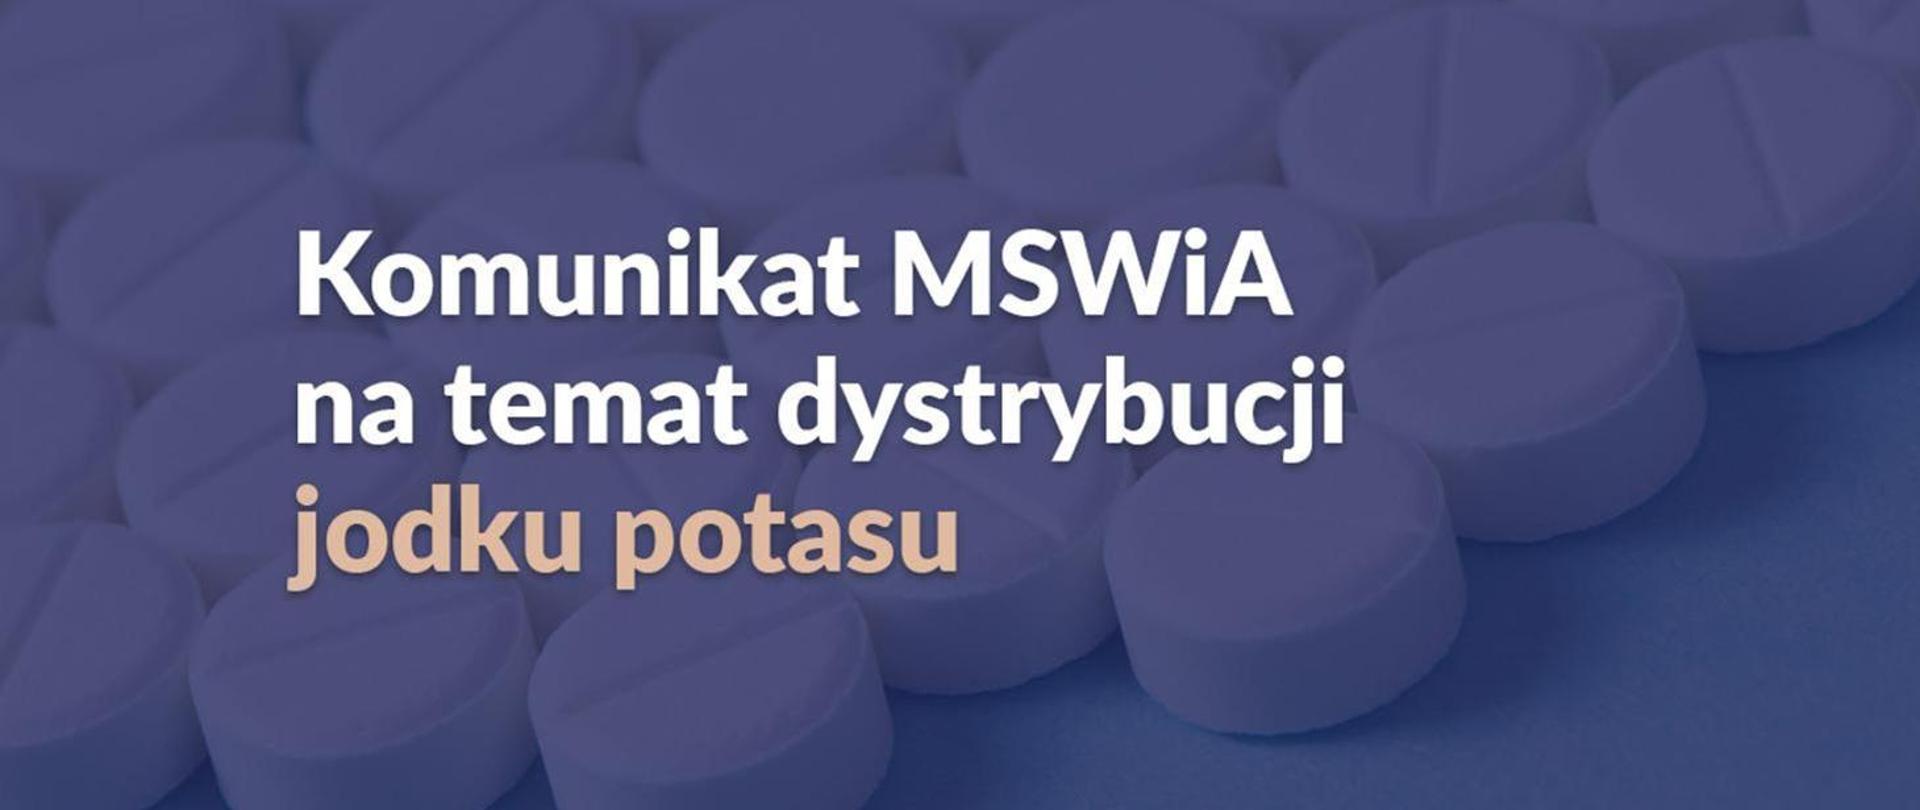 Komunikat MSWiA na temat dystrybucji jodku potasu na ciemnoniebieskim tle z tabletkami. 